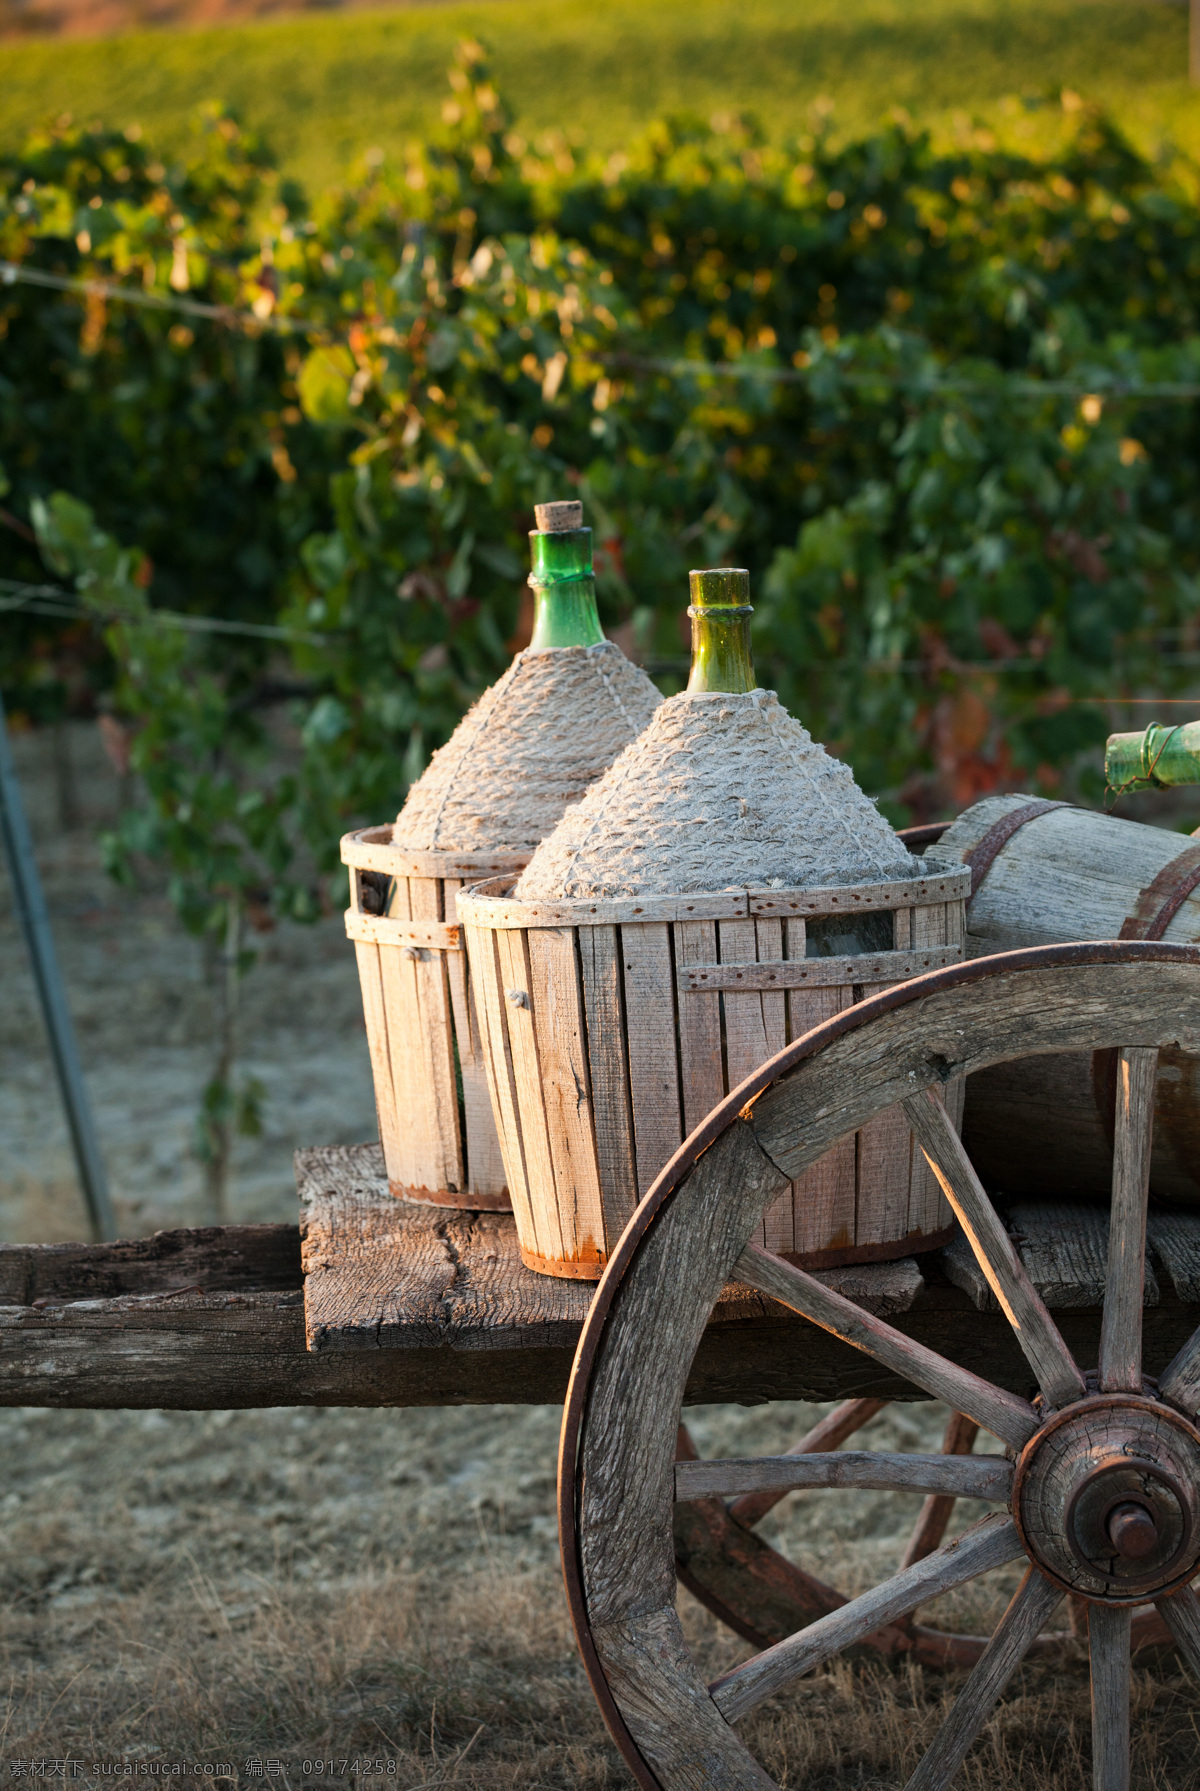 葡萄园 风景摄影 手推车 木桶 红酒 葡萄酒 酿酒 建筑设计 环境家居